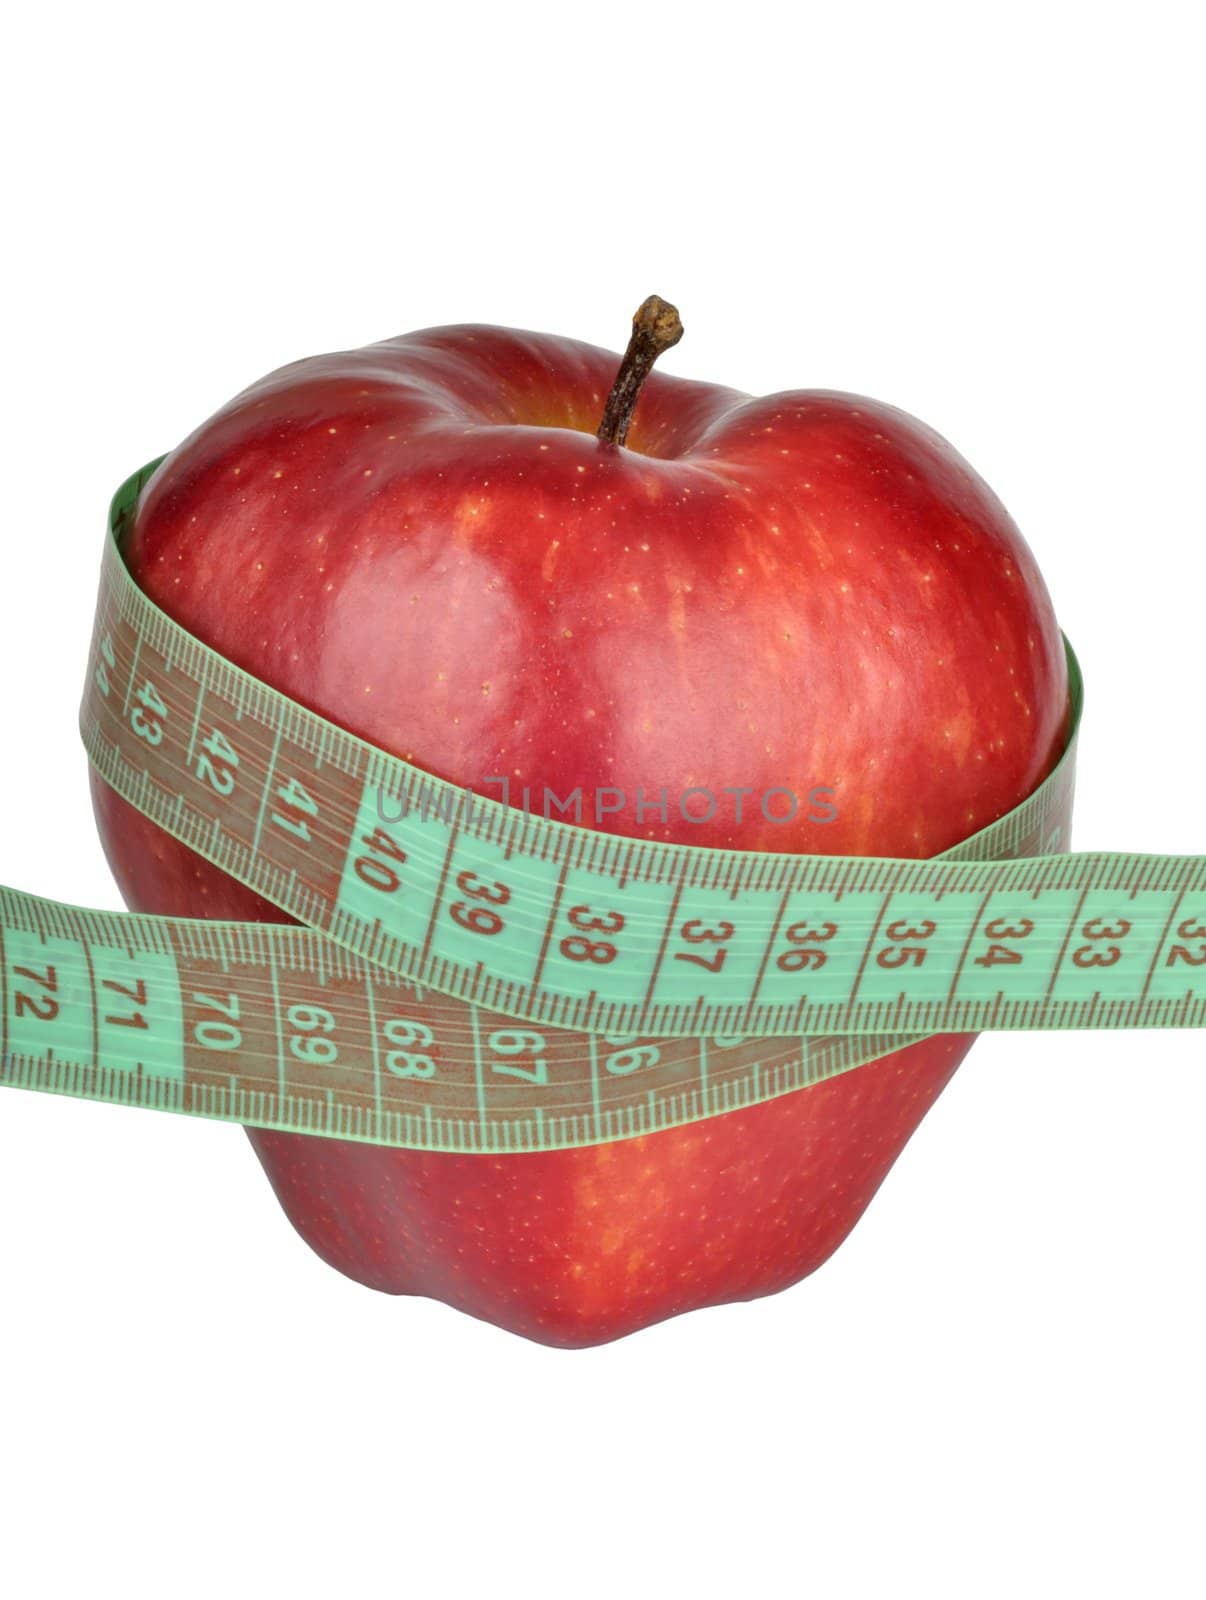 Red apple measured the meter